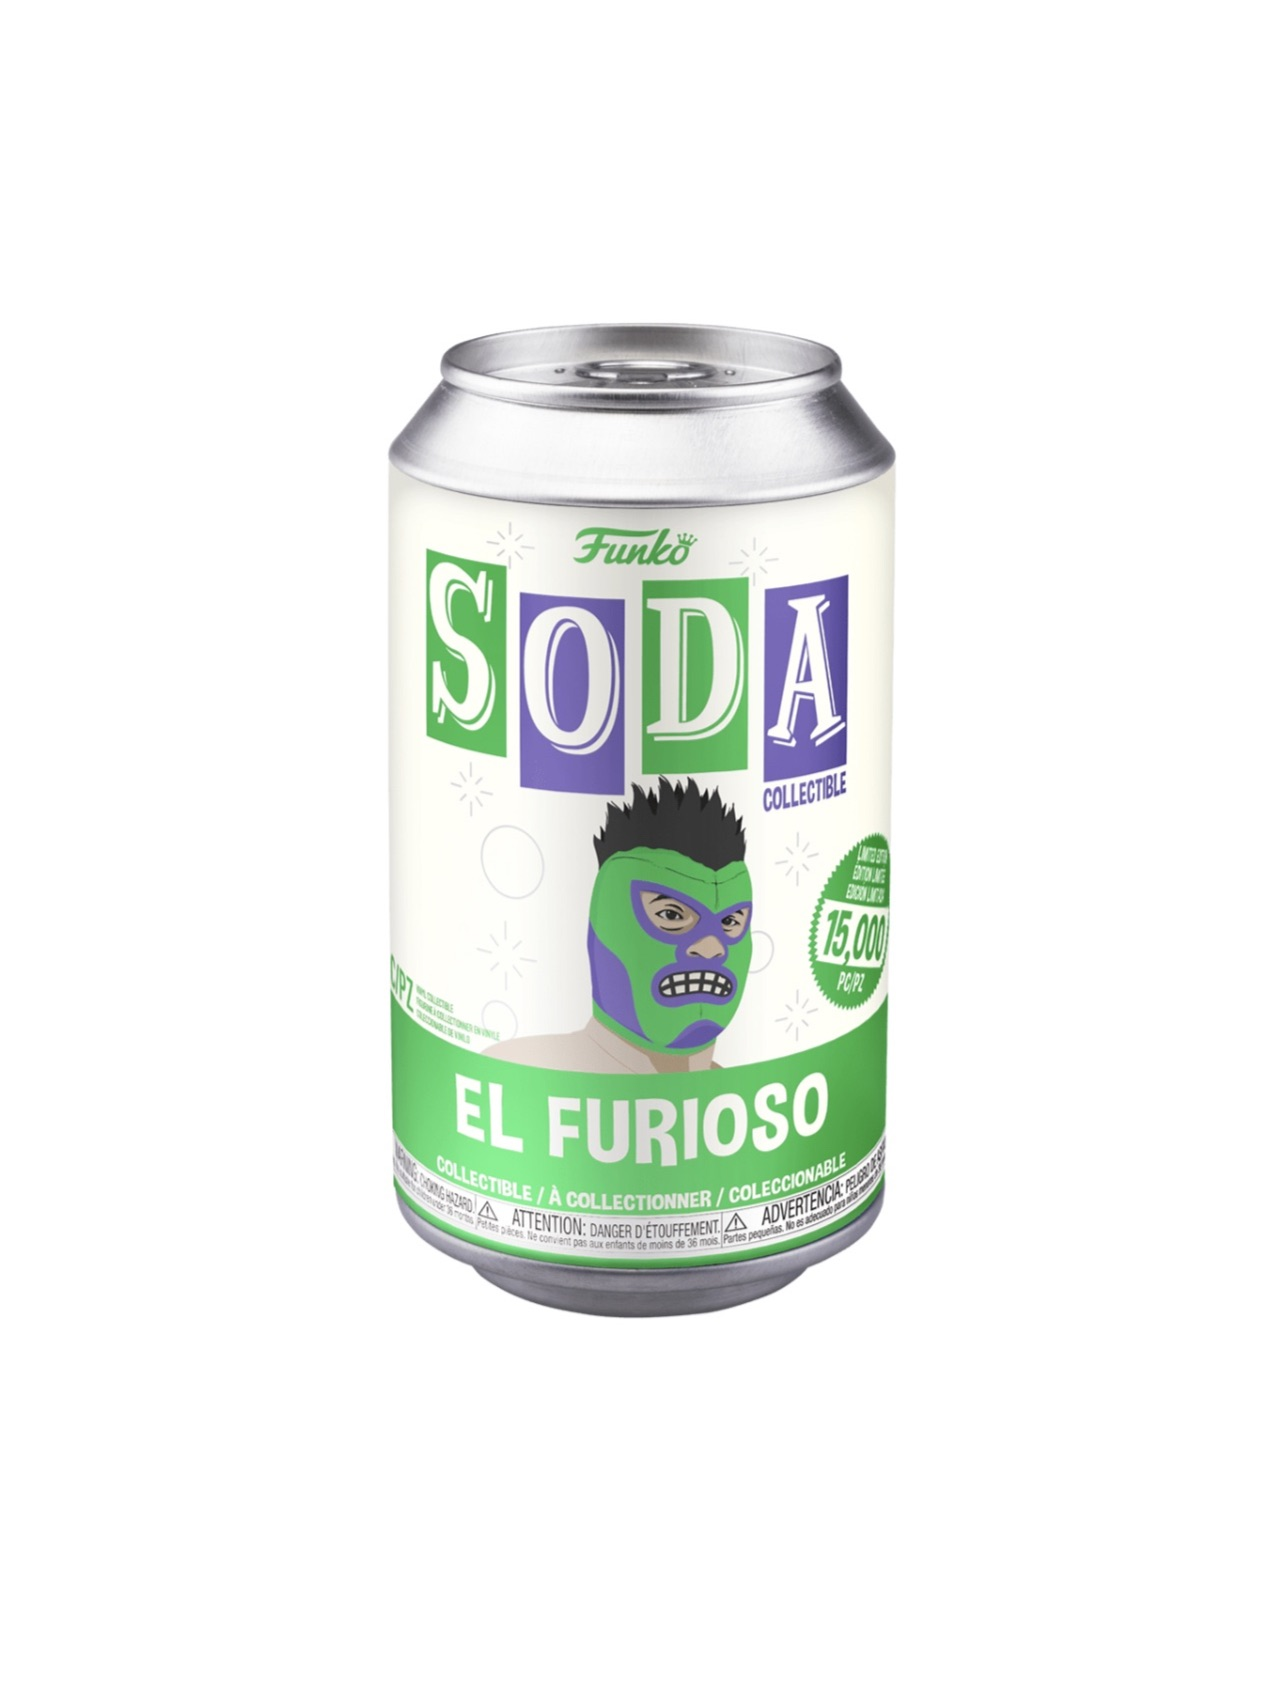 Vinyl Soda El Furioso - The Fun Exchange